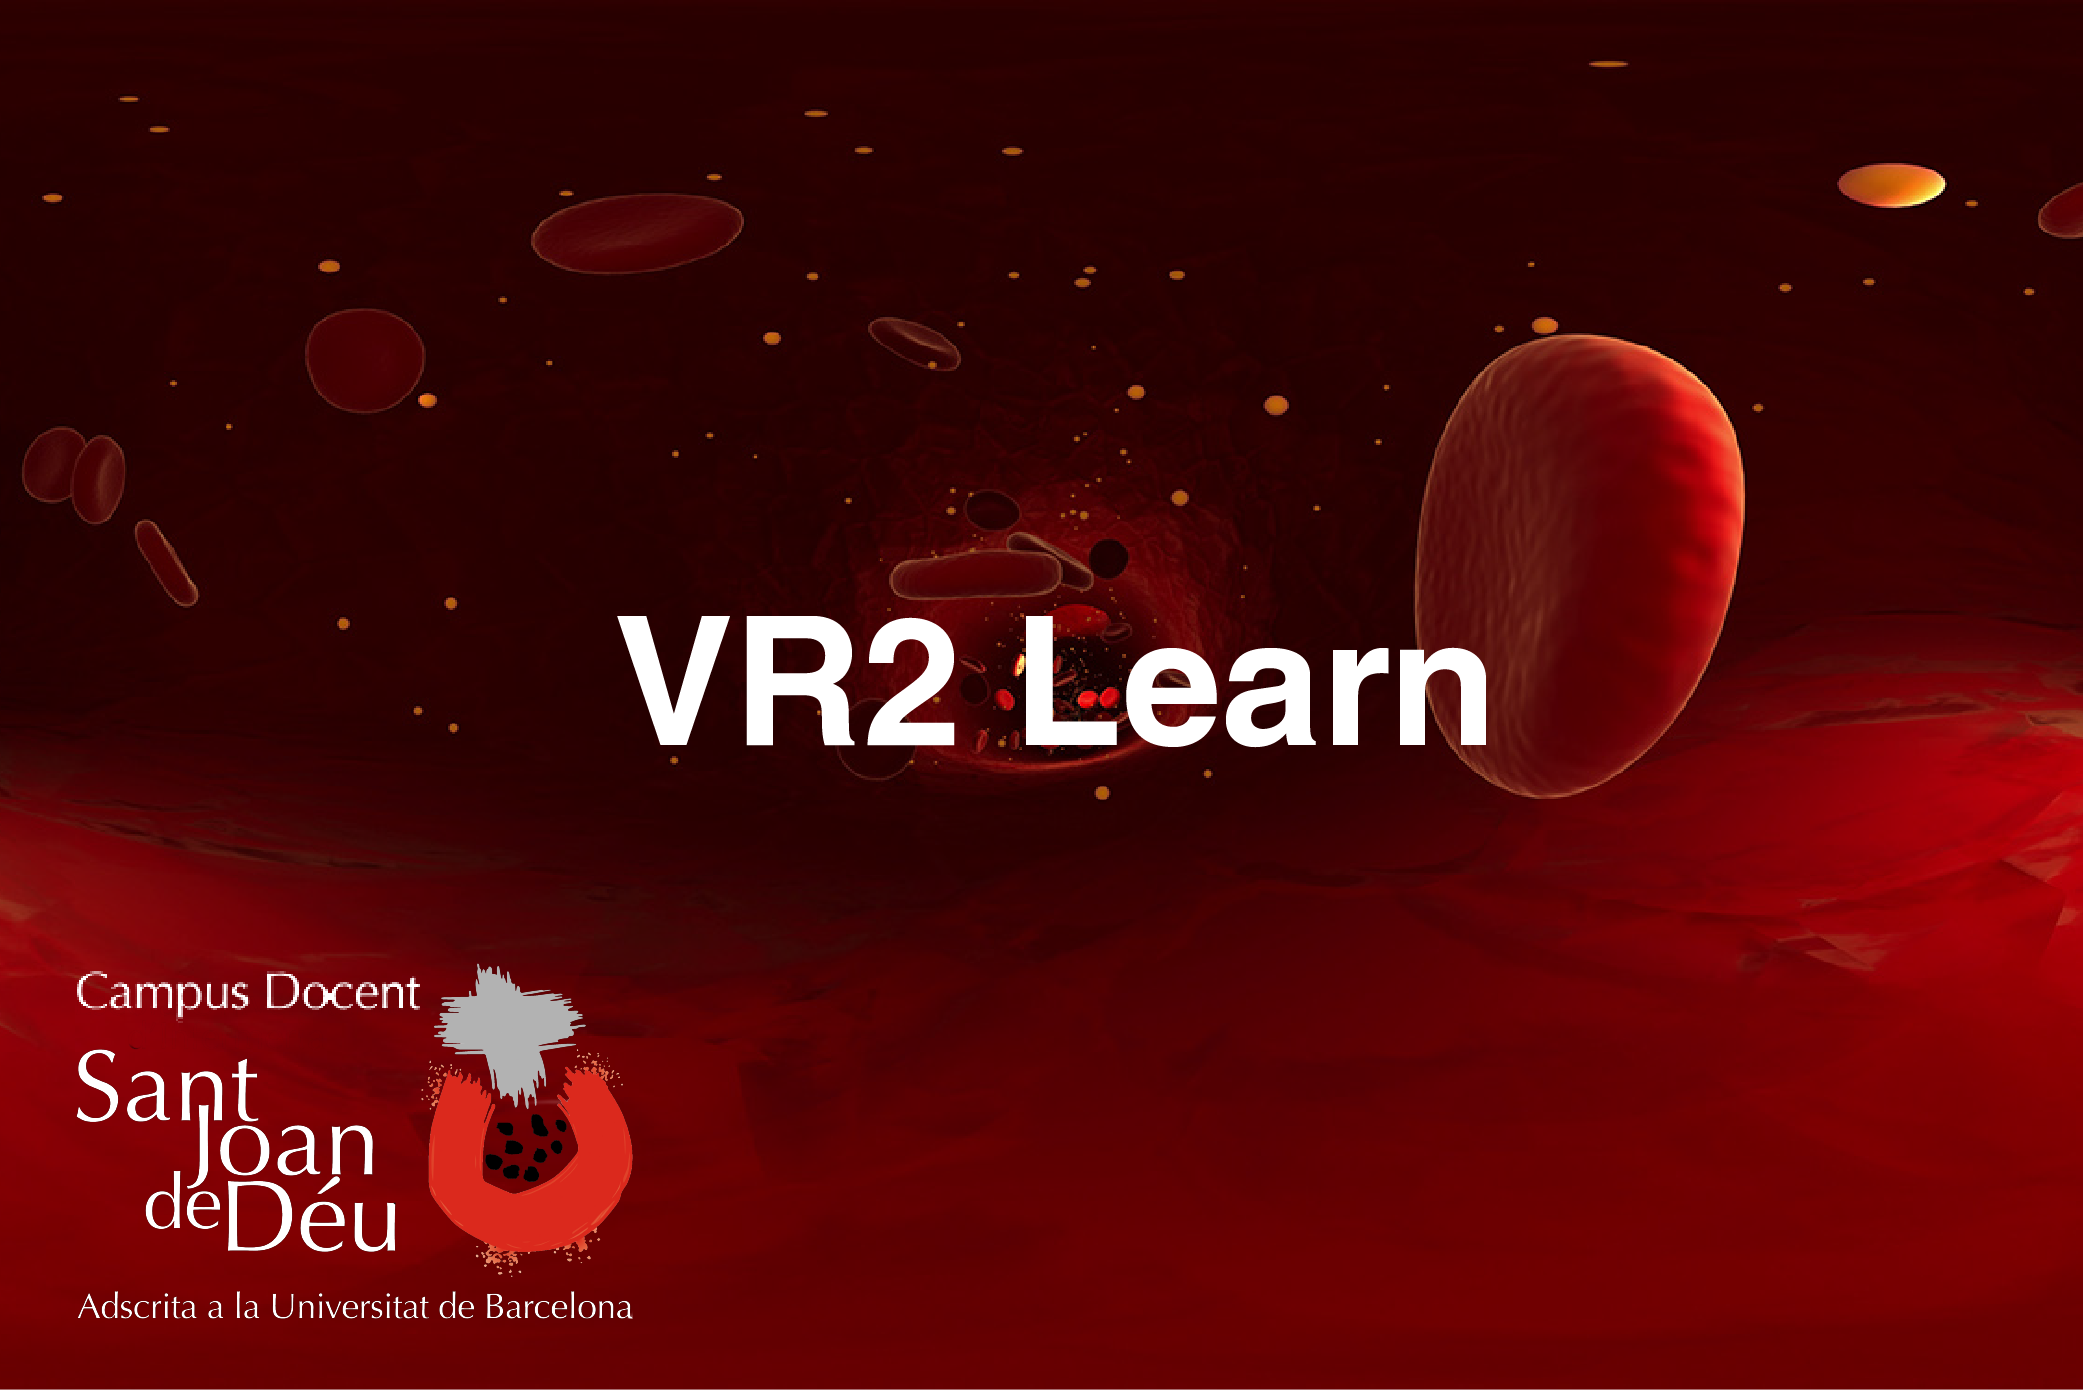 VR2 Learn es un proyecto de desarrollo de contenidos en colaboración con el Campus Docente del Hospital San Joan de Deu